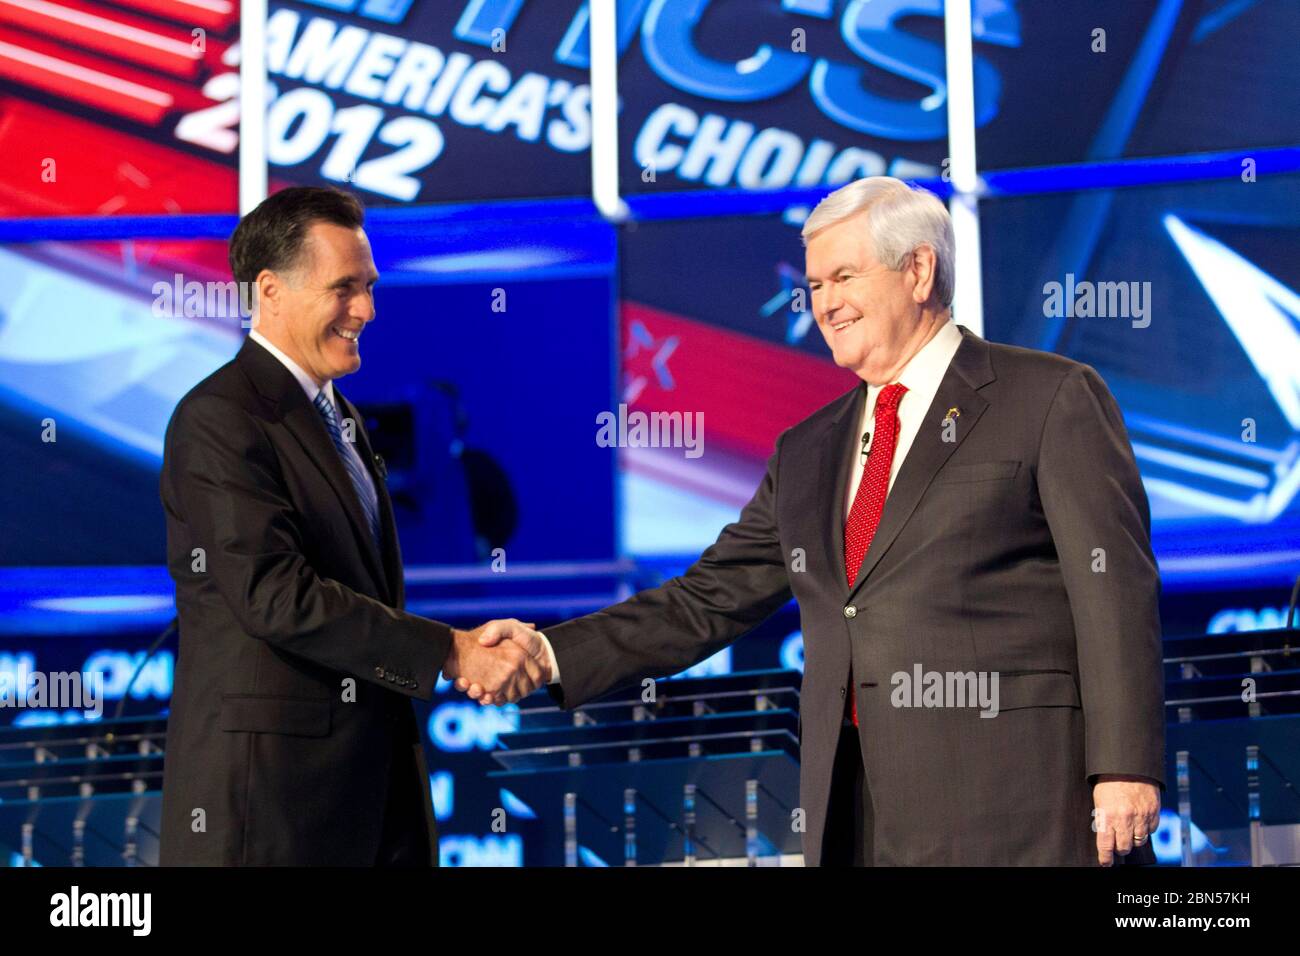 North Charleston South Caroline USA, Januar 19 2012: Mitt Romney, Left, schüttelt Newt Gingrich die Hand, während die verbleibenden Kandidaten für die republikanische Präsidentschaftsnominierung gemeinsam in einer Debatte im Fernsehen über CNN erscheinen. © Bob Daemmrich Stockfoto